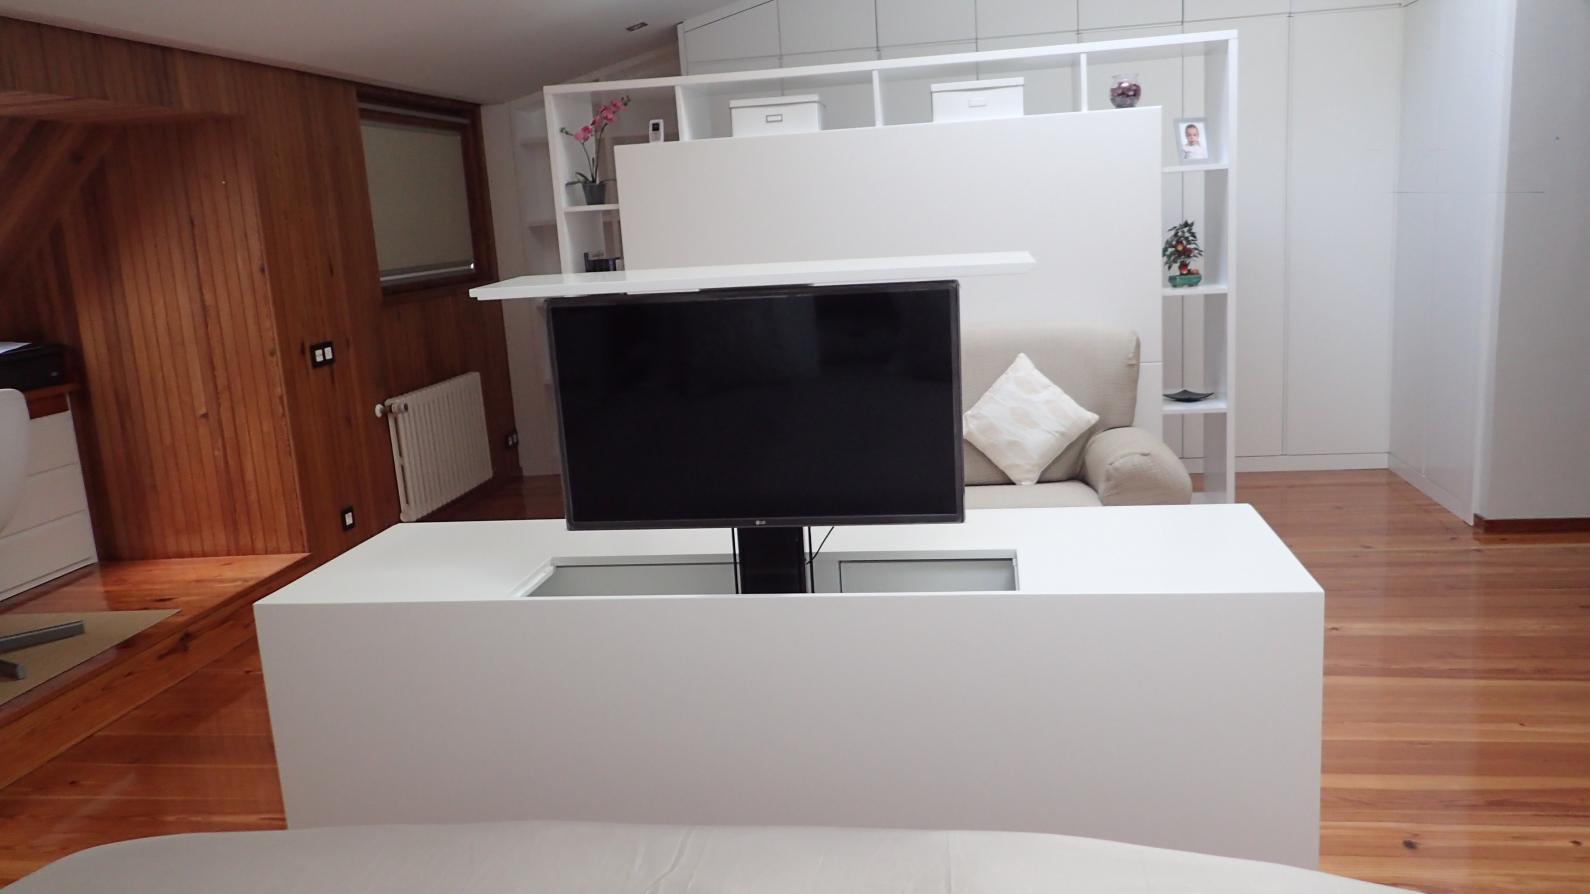 Mueble aparador con cajones y tv oculta giratoria. 2.600€ Aprox
